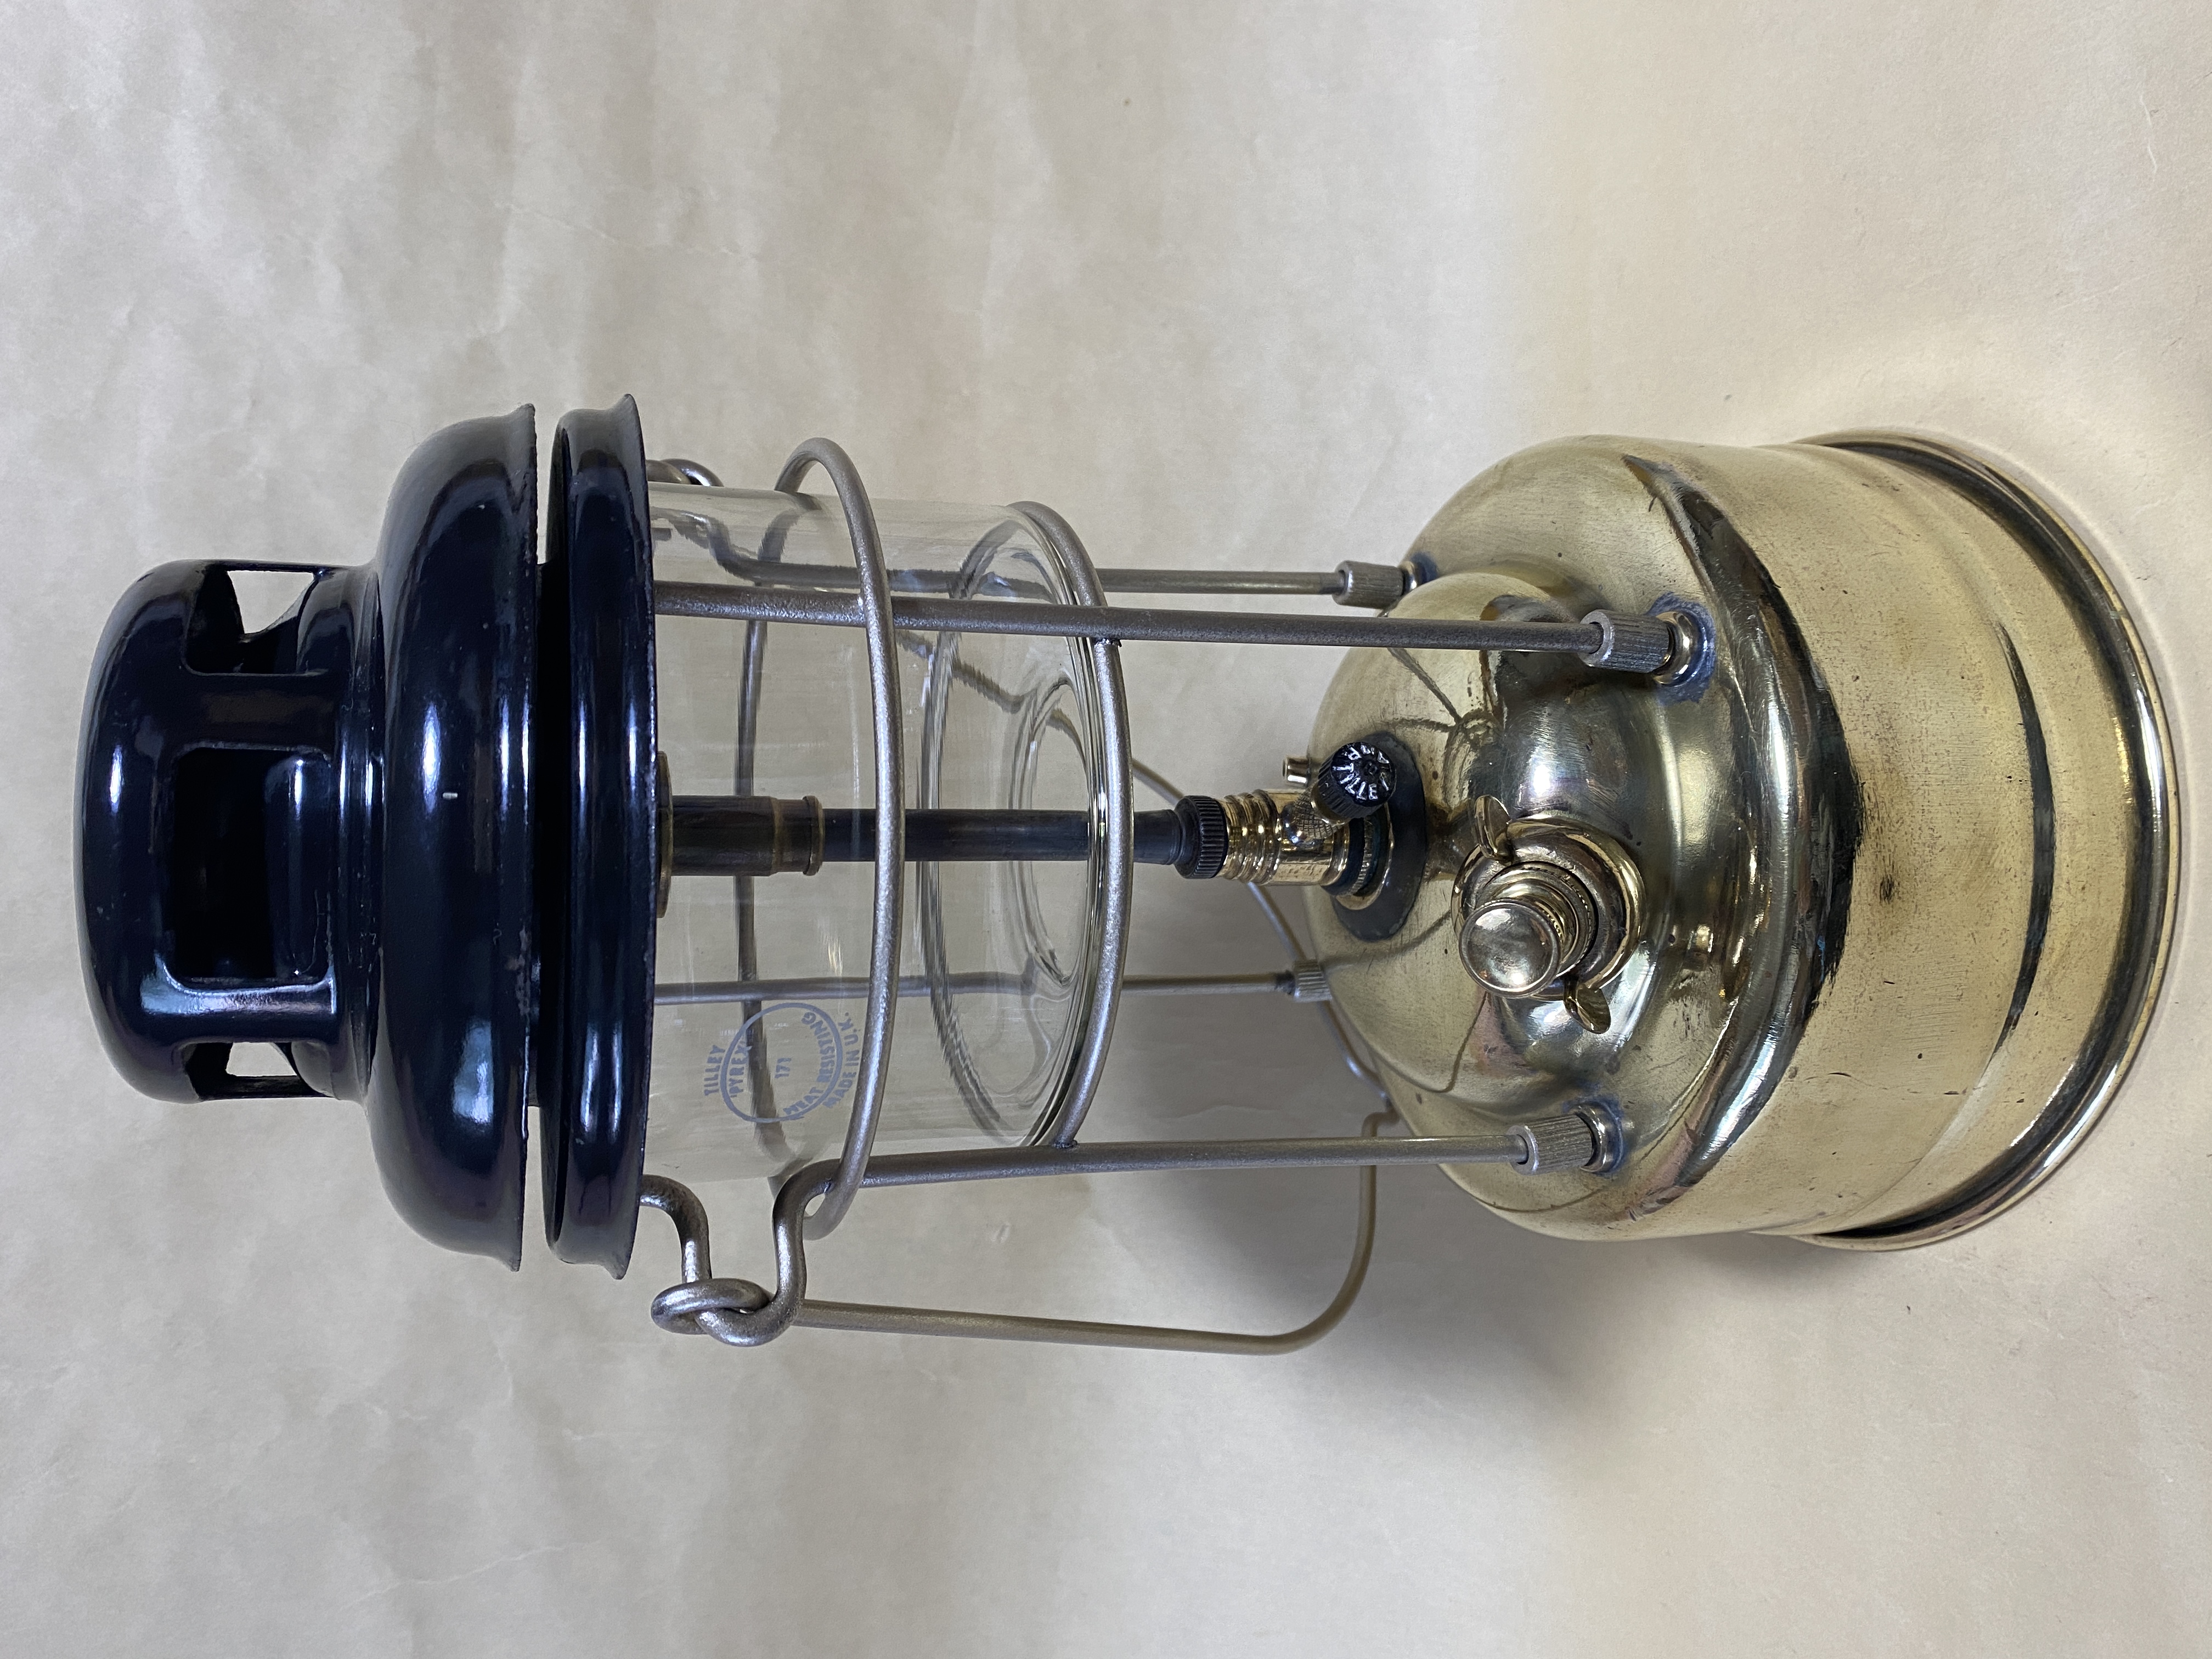 TILLEY LAMP 2モデル 4体 掲載いたしました。X246ポークパイ & PL53